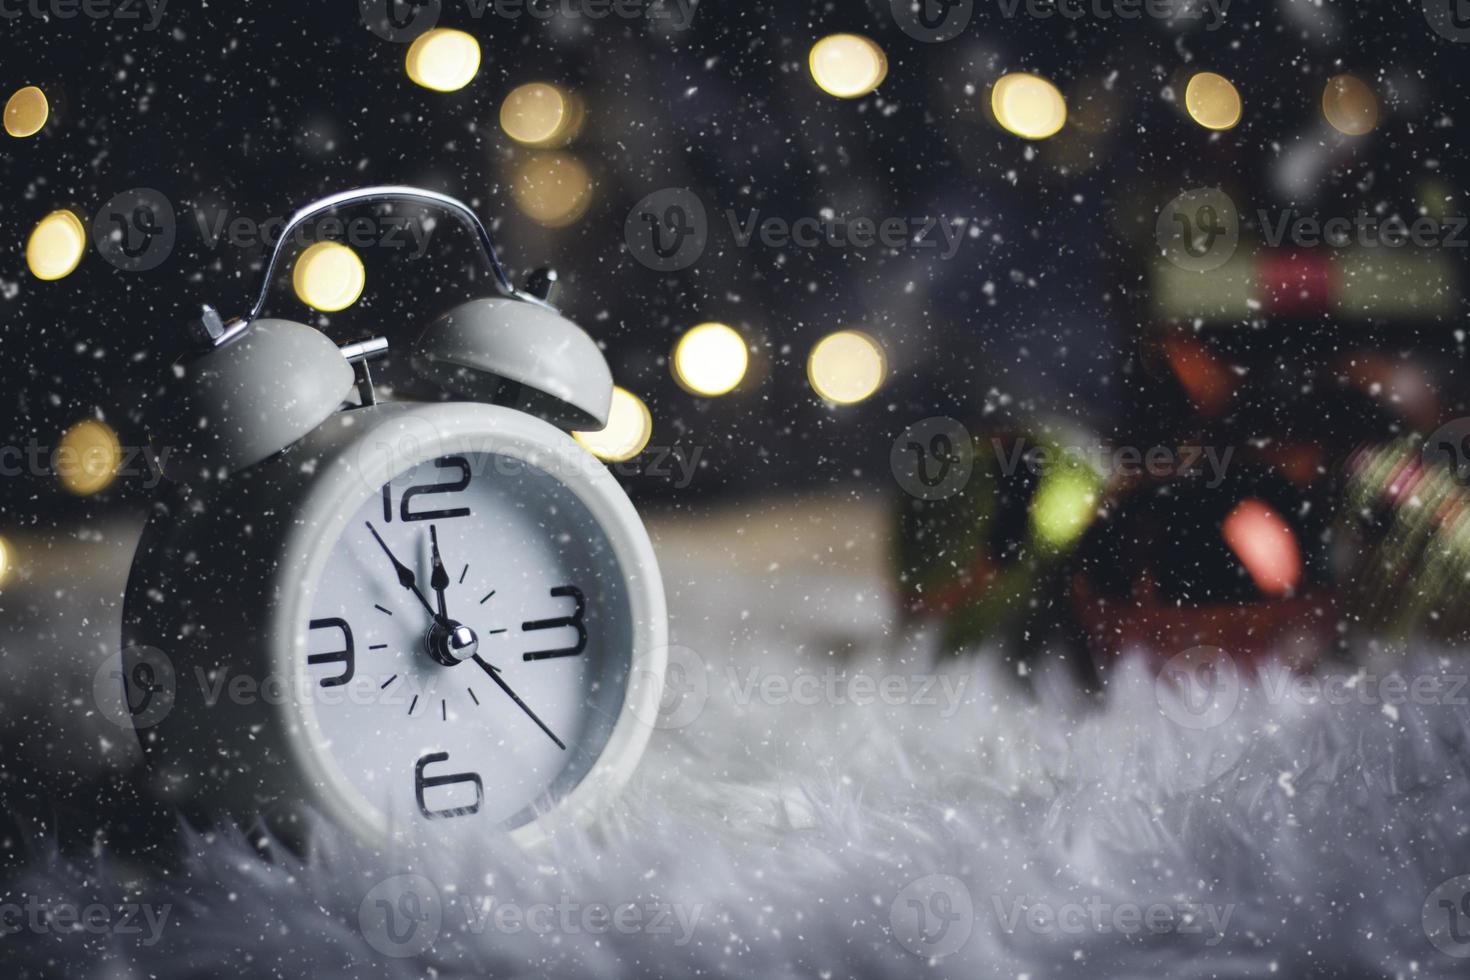 weihnachtstag thema dekoration mit hut santa und weiß retro clock.wood cube block kalender vorhanden datum 26 und monat dezember.kopierraum für text.celebration weihnachten und x'mas konzept. foto